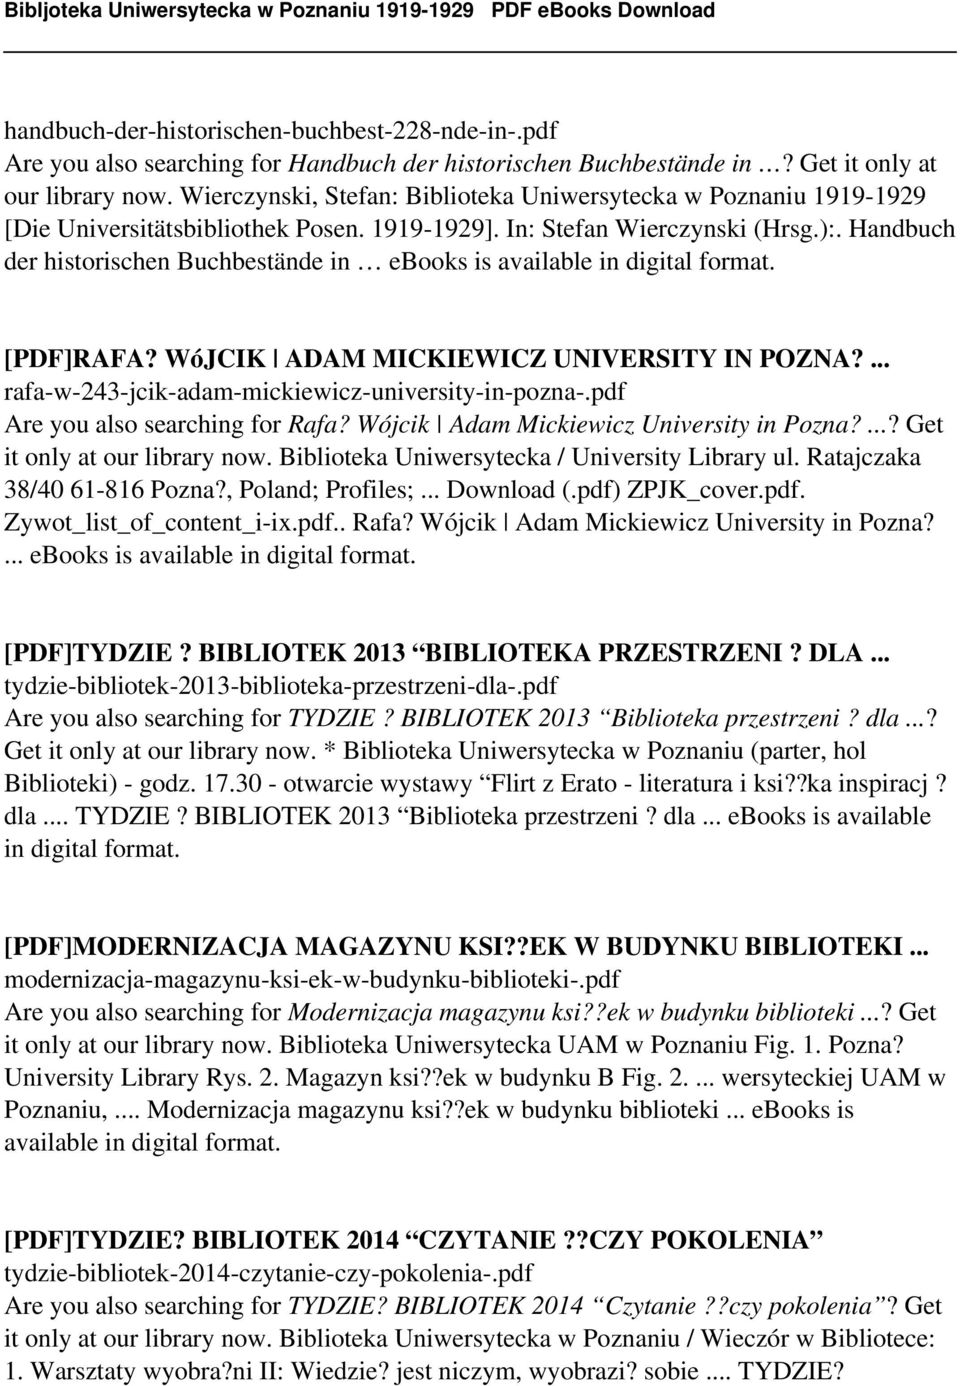 Handbuch der historischen Buchbestände in ebooks is available in digital format. [PDF]RAFA? WóJCIK ADAM MICKIEWICZ UNIVERSITY IN POZNA?... rafa-w-243-jcik-adam-mickiewicz-university-in-pozna-.